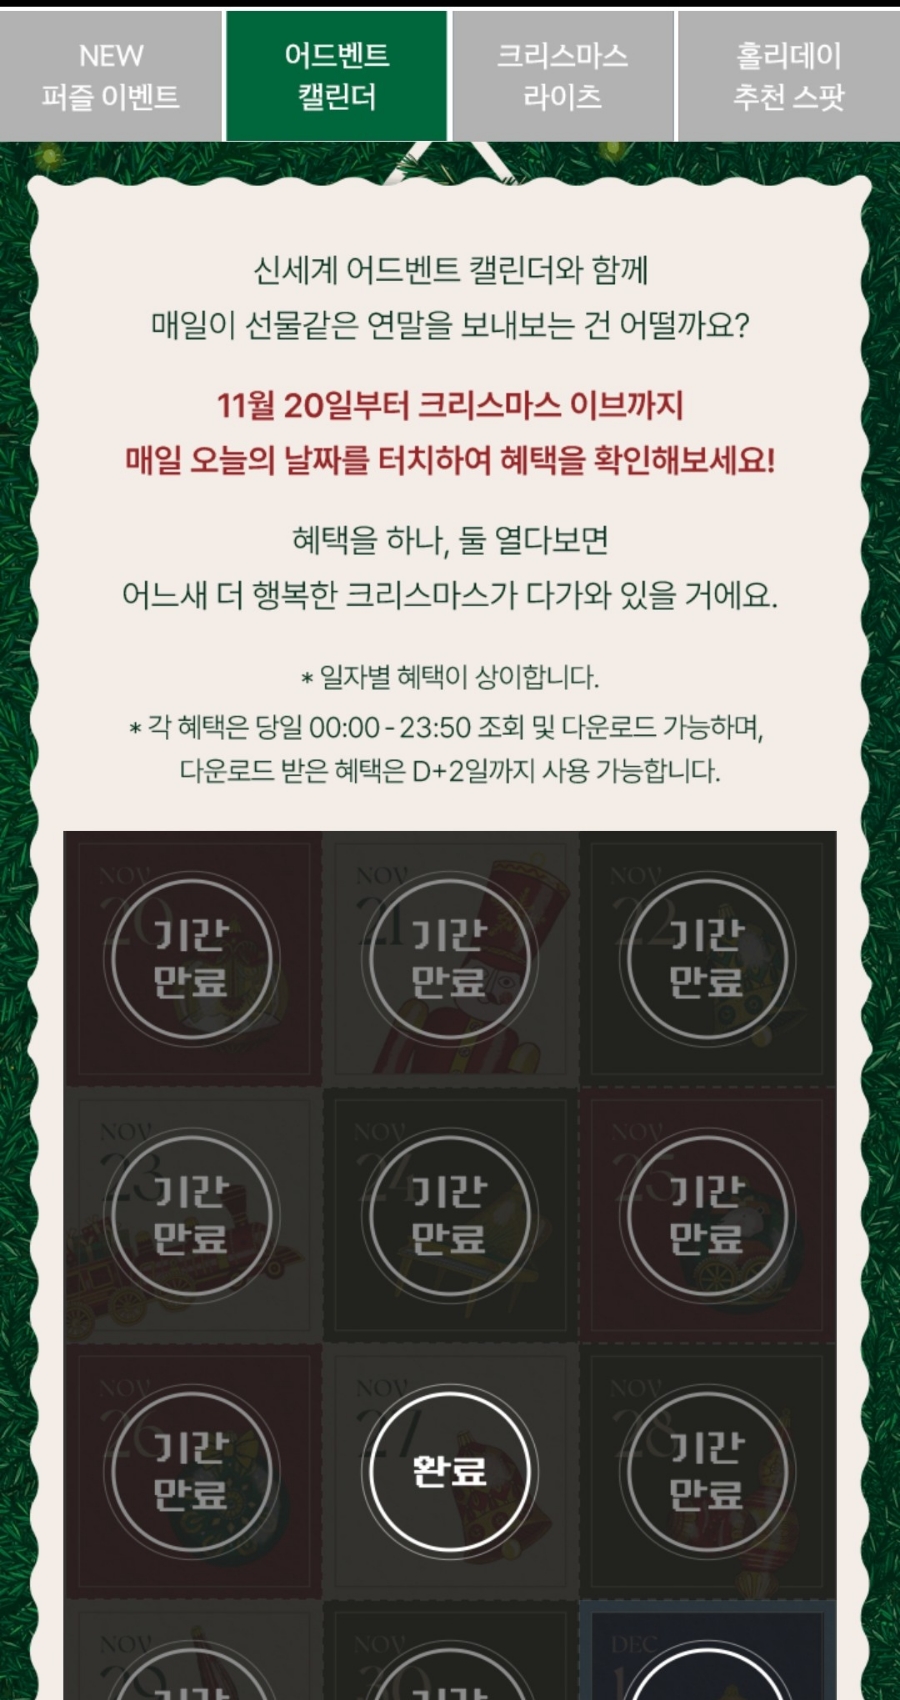 신세계백화점 앱 크리스마스 이벤트, 퍼즐 신백리워드 사용후기, 커피 무료쿠폰